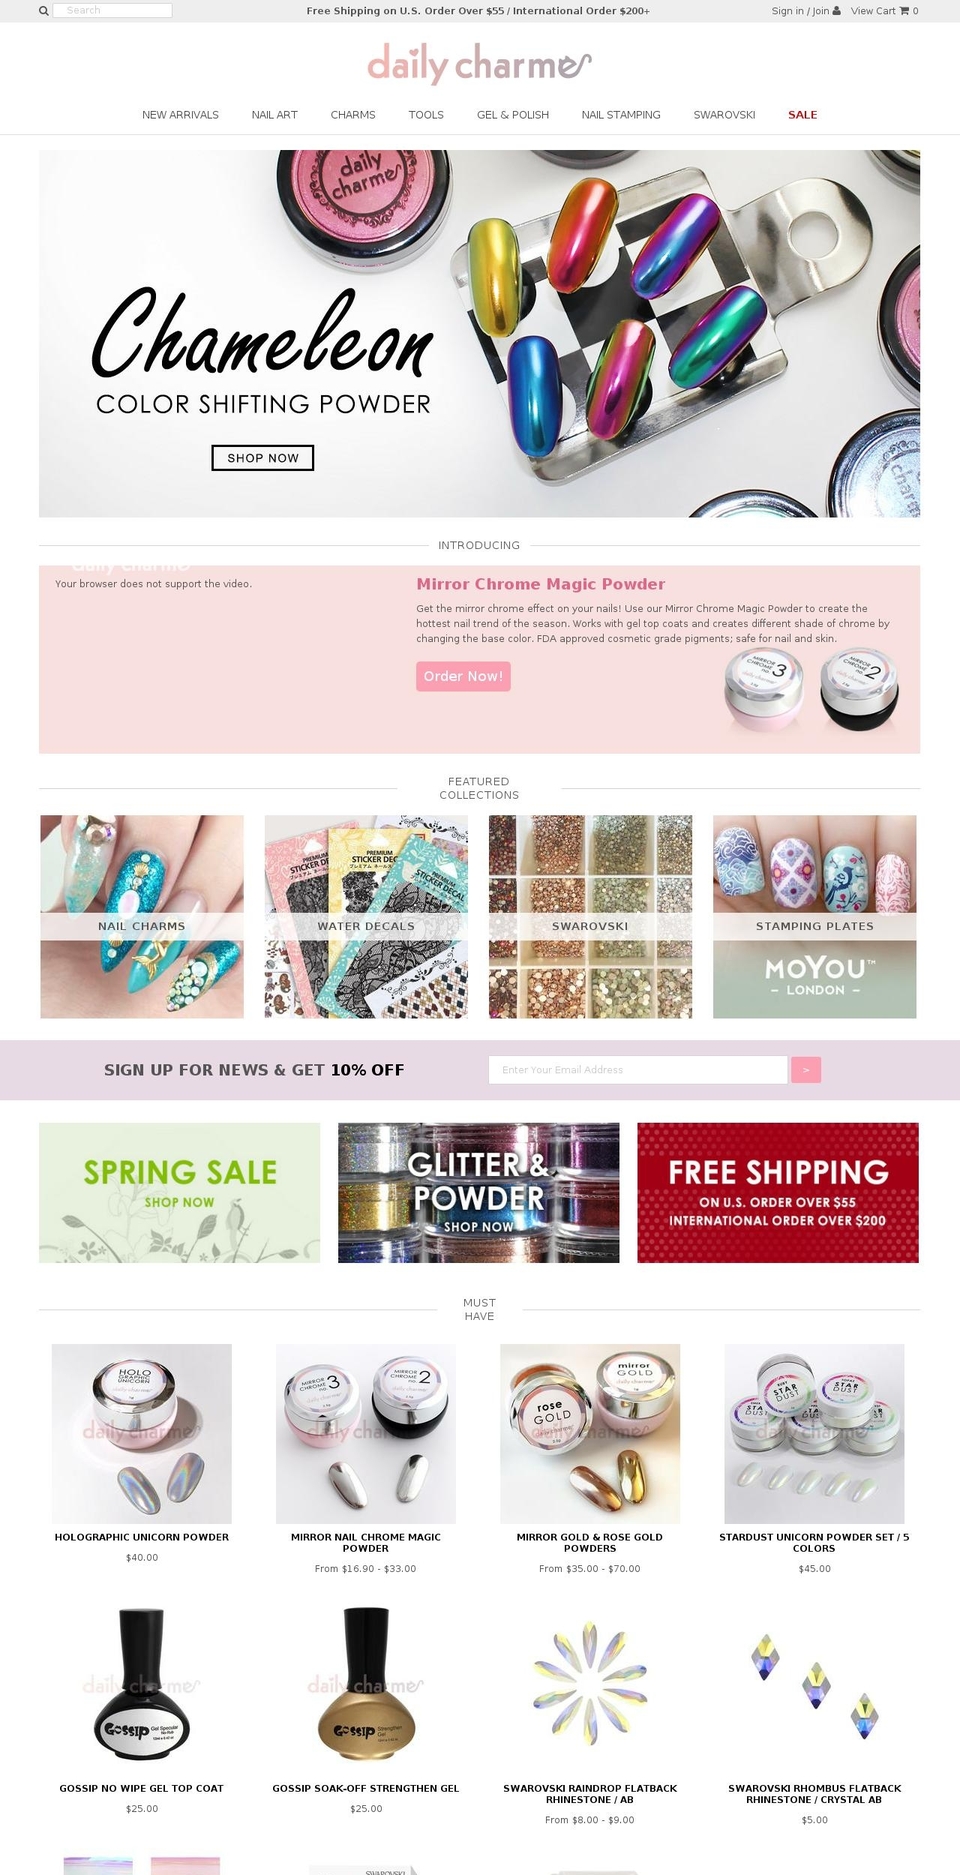 dailycharme.com shopify website screenshot